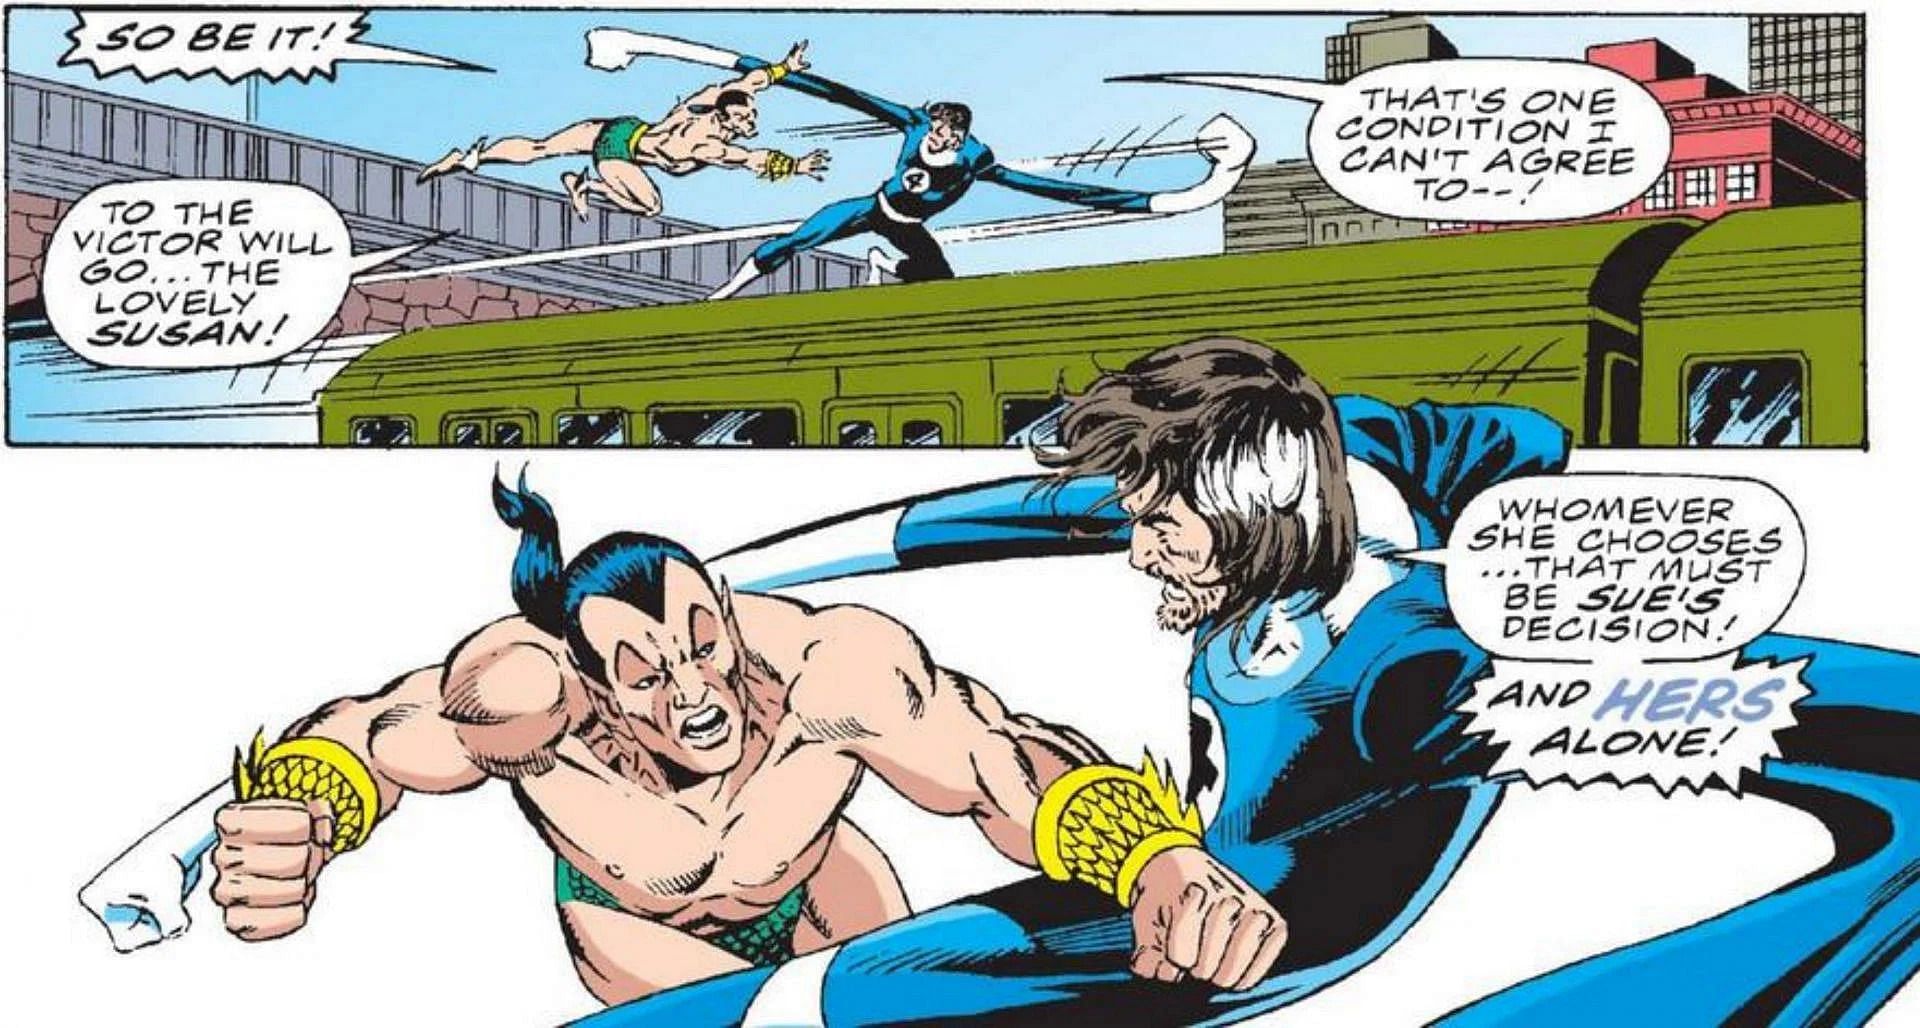 Mr. Fantastic fighting the Sub-Mariner (Image via Marvel)